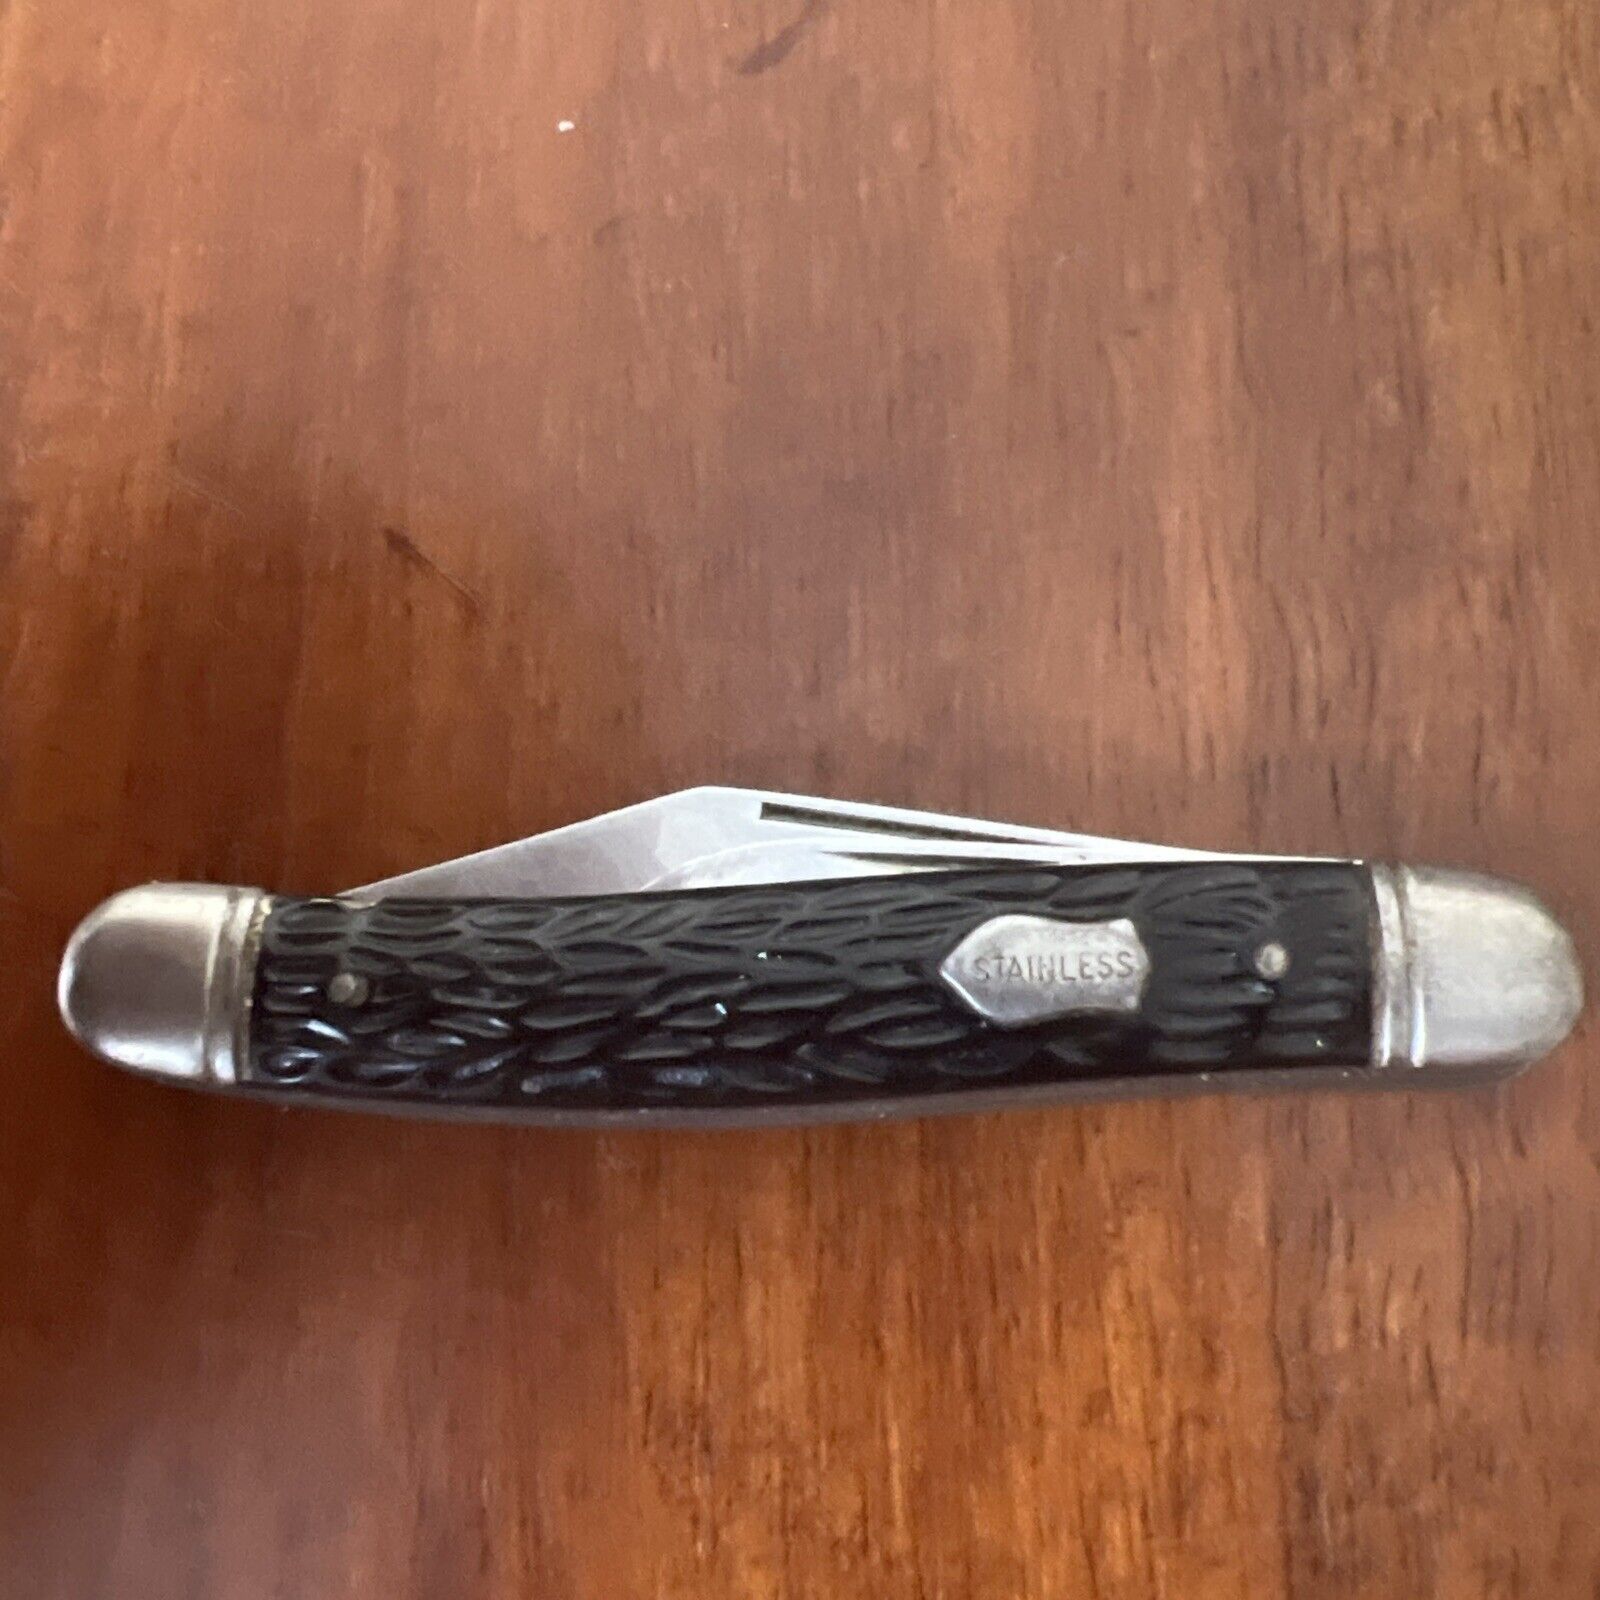 Vintage Imperial 2 Blade Pocket Knife